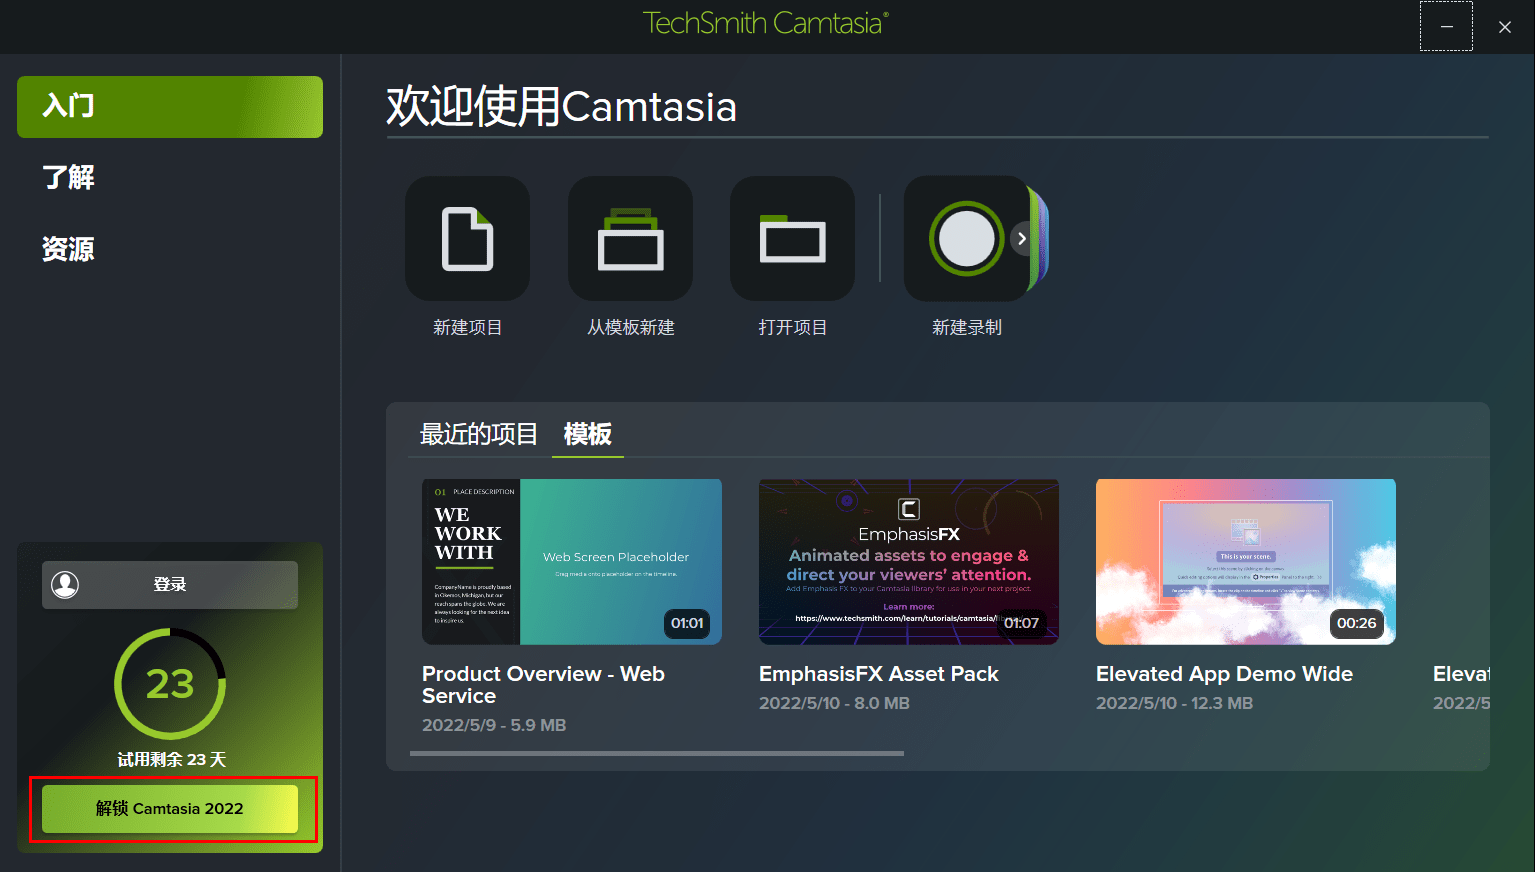 苹果音乐免费神器破解版
:Camtasia2022安装激活教程，录屏神器免费使用指南